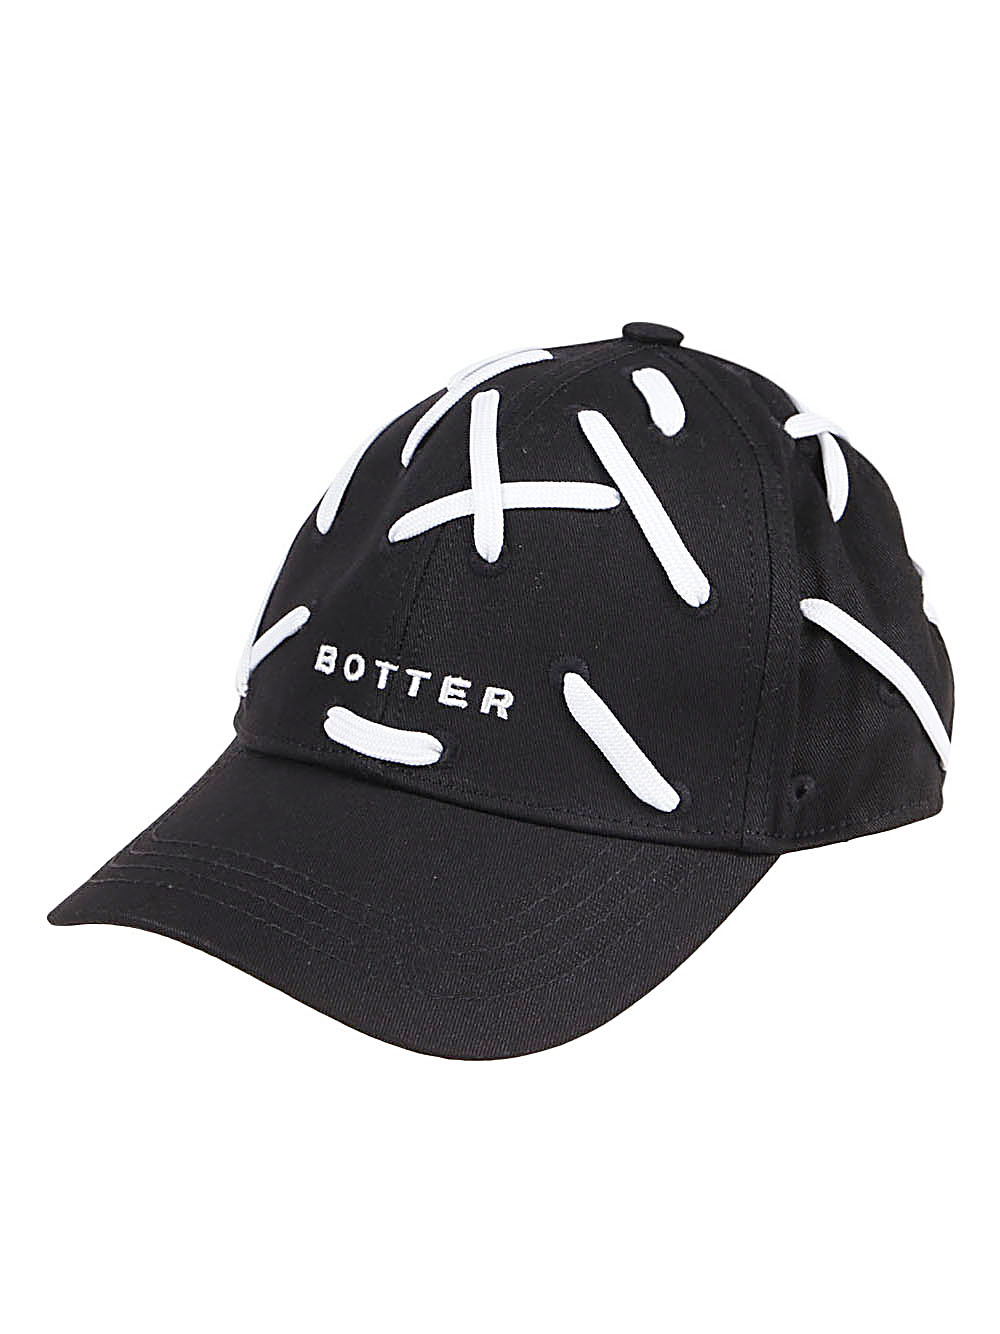 Botter BOTTER- Baseball Cap